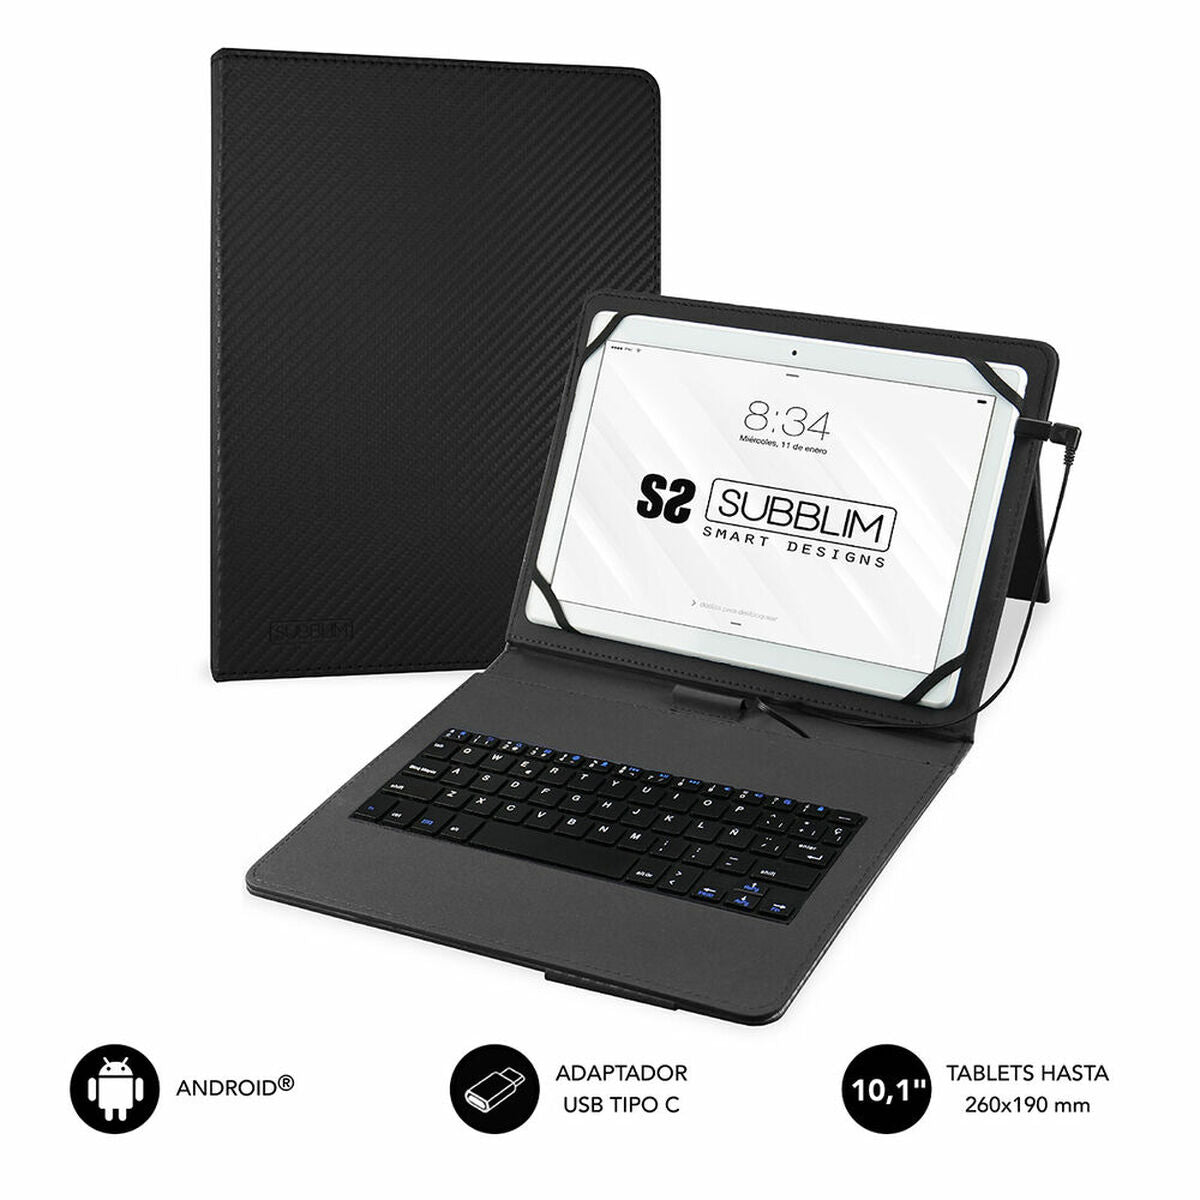 Hülle für Tablet und Tastatur Subblim SUBKT1USB001 Schwarz 10,1" - CA International 